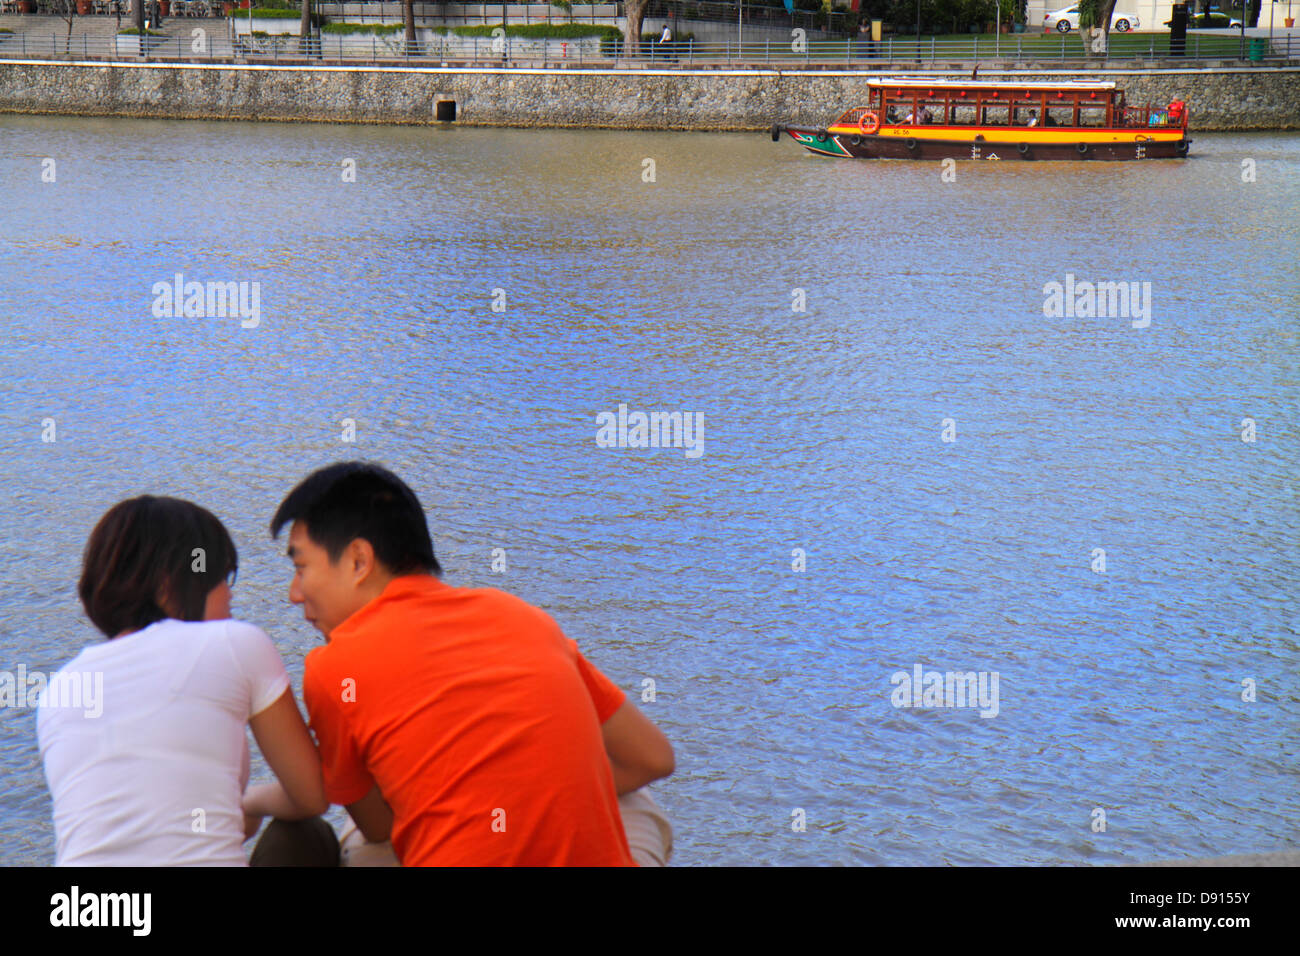 Singapur Singapur River, Boat Quay, asiatischer Mann Männer männlich, Frau weibliche Frauen, Paar, romantisch, Wassertaxi, Kreuzfahrt-Boot, Sing130201158 Stockfoto